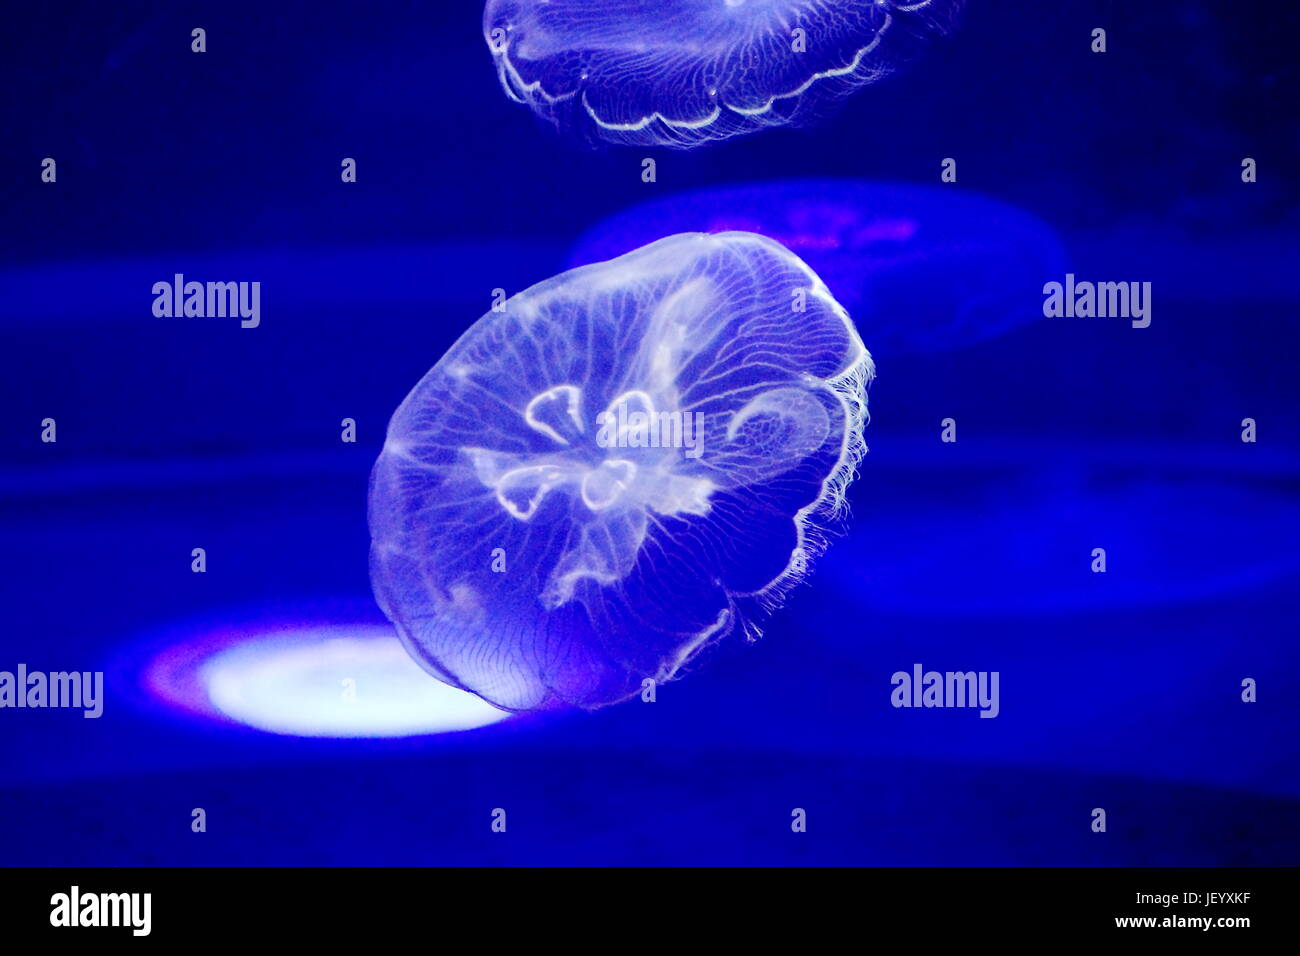 Moon Jelly (Cnidaires) - le nom de sa circulaire translucide bell, est bien connu dans le monde entier dans les eaux tropicales et tempérées. Banque D'Images